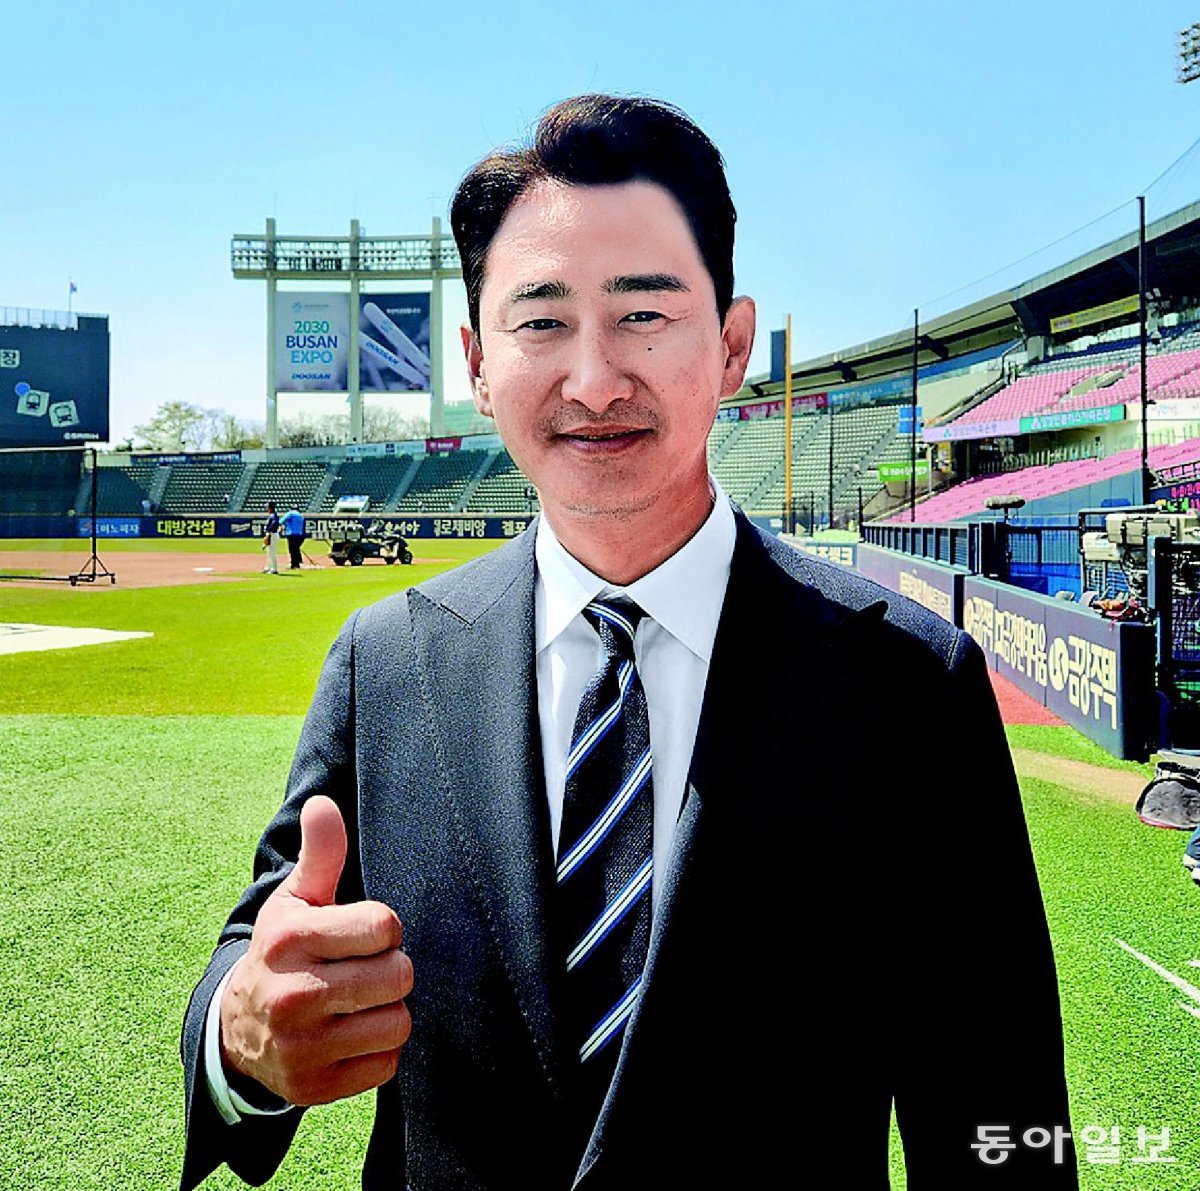 프로야구 LG의 프랜차이즈 스타였던 박용택은 야구 해설위원이자 방송인으로 바쁜 인생 2막을 살고 있다. 은퇴한 지금도 그는 선수 때와 마찬가지로 자기 관리에 열심이다. 이헌재 기자 uni@donga.com